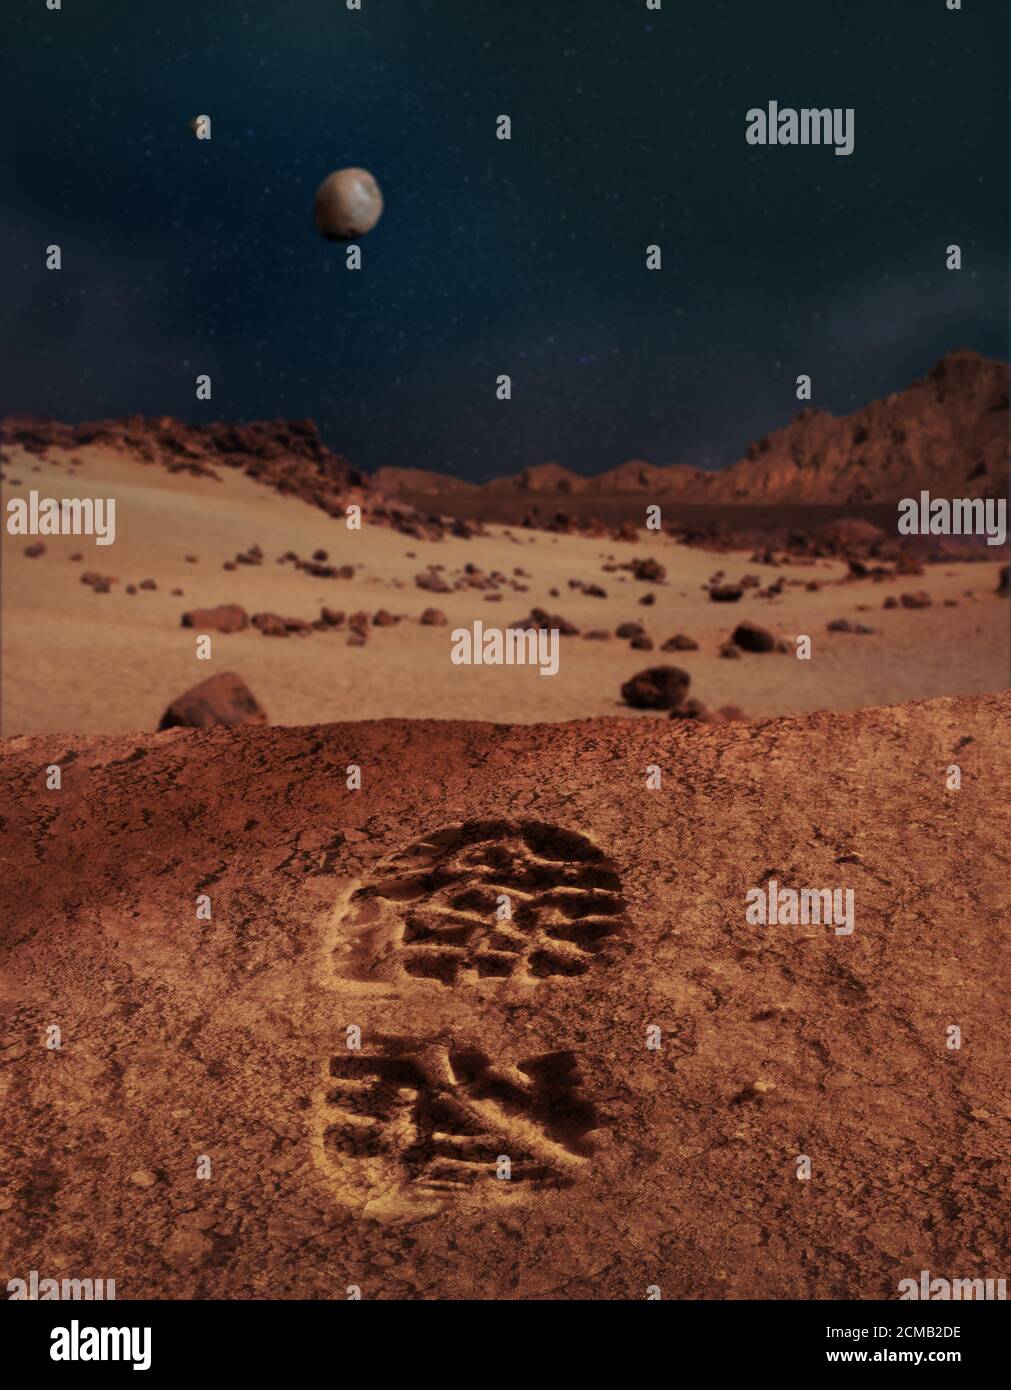 Illustration des ersten menschlichen Fußabdrucks auf sandigen und felsigen Planeten Mars Landschaft. Stockfoto